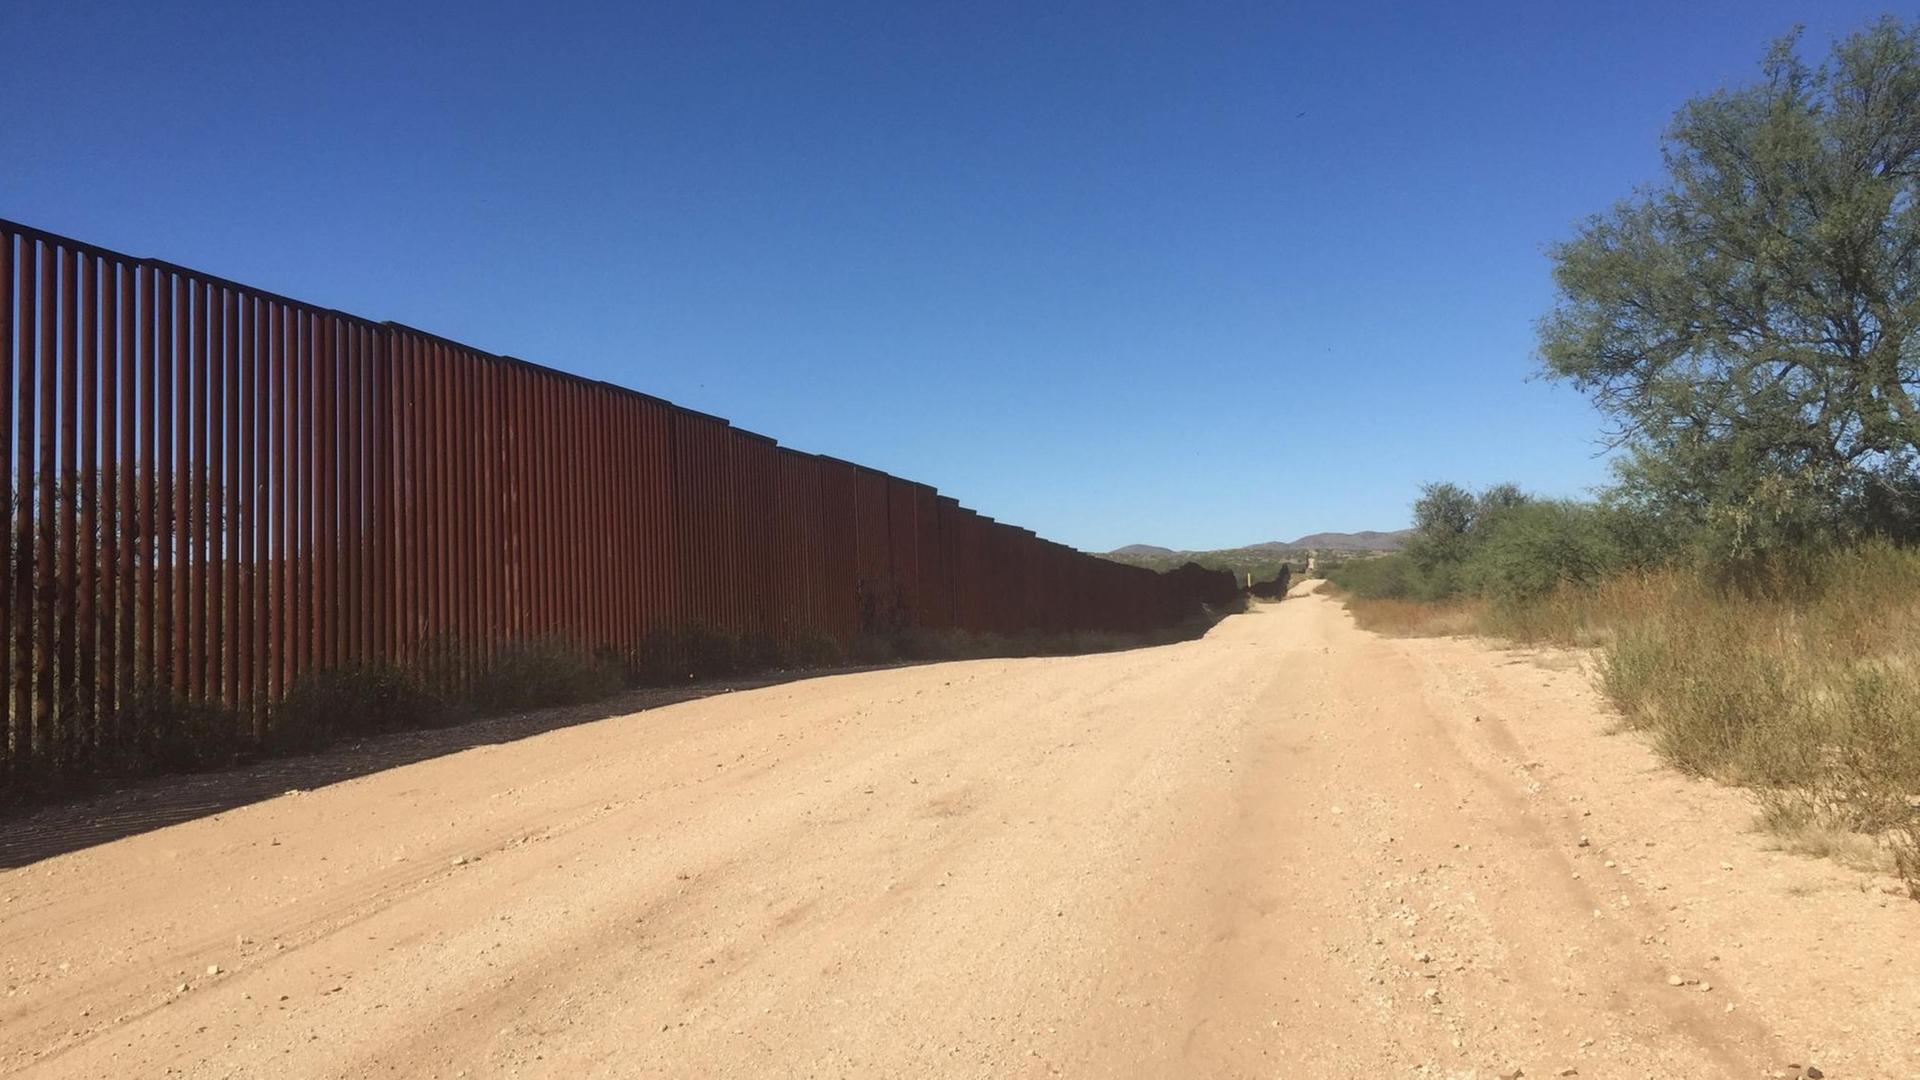 Am linken Bildrand sieht man den Grenzzaun zwischen Mexiko und den USA. In der Bildmitte verläuft ein sandiger Weg und am rechten Bildrand sind karge Bäume und Büsche zu sehen.